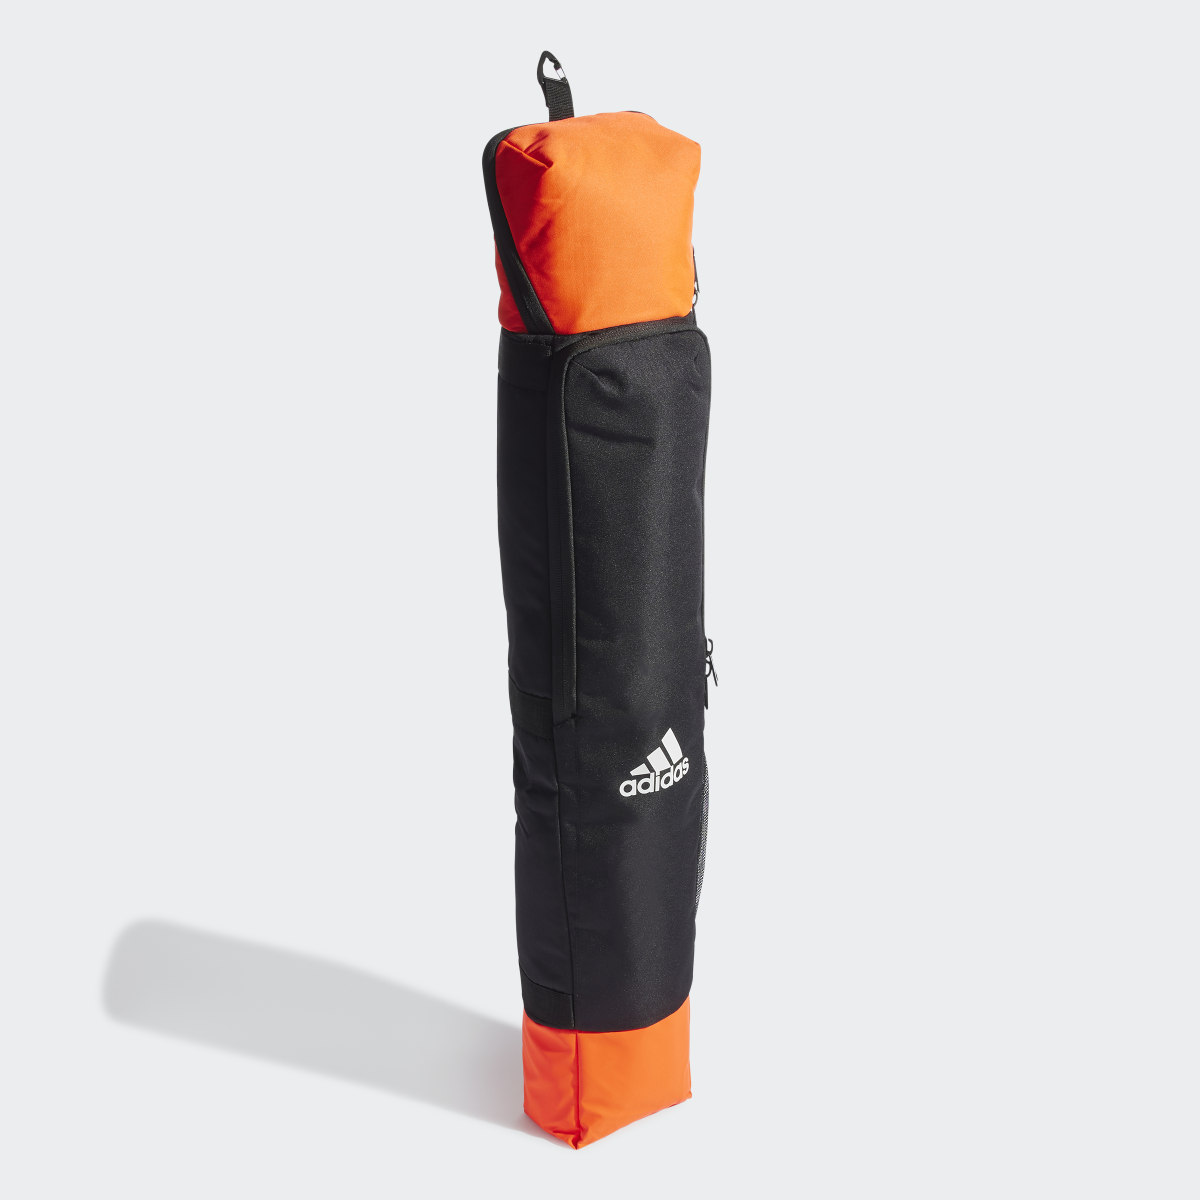 Adidas VS2 Stick Bag. 4